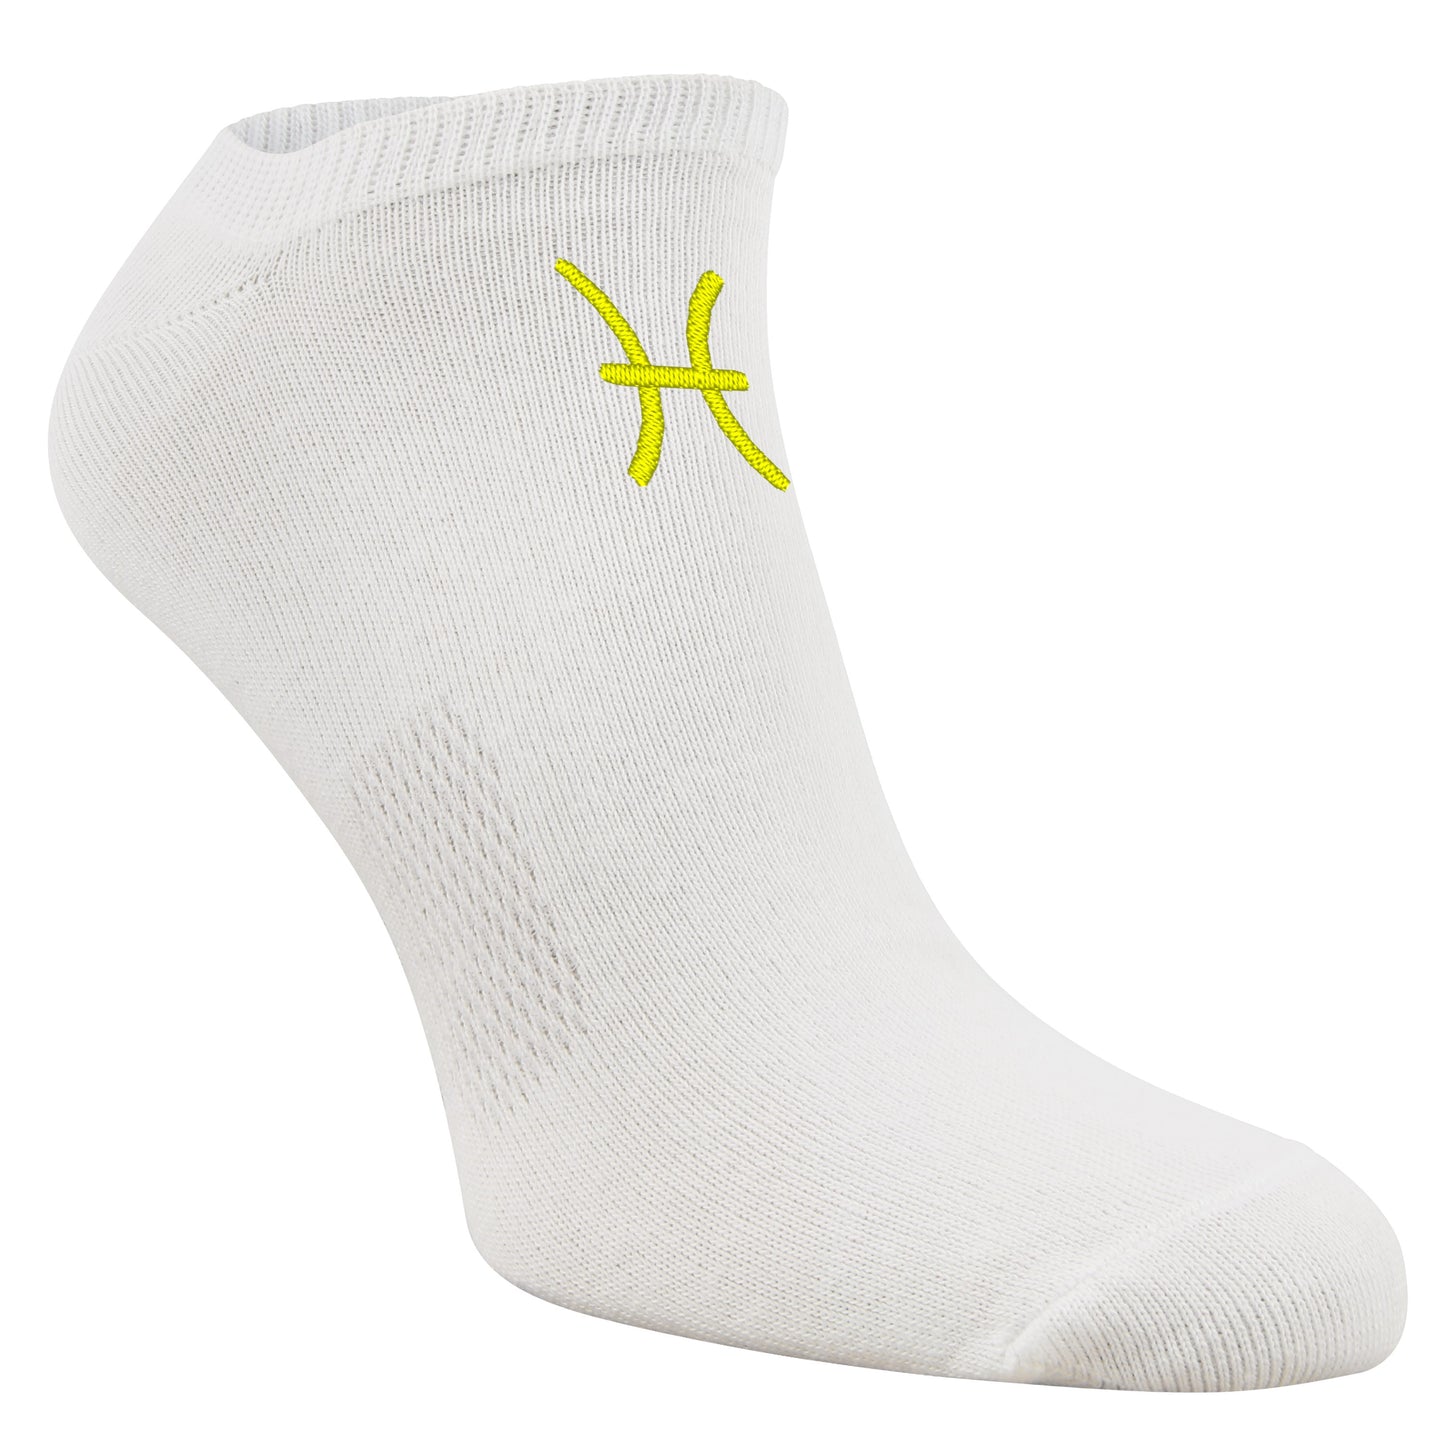 Sneaker-Socken mit Sternzeichen Fische-Sign und Wunschtext bestickt